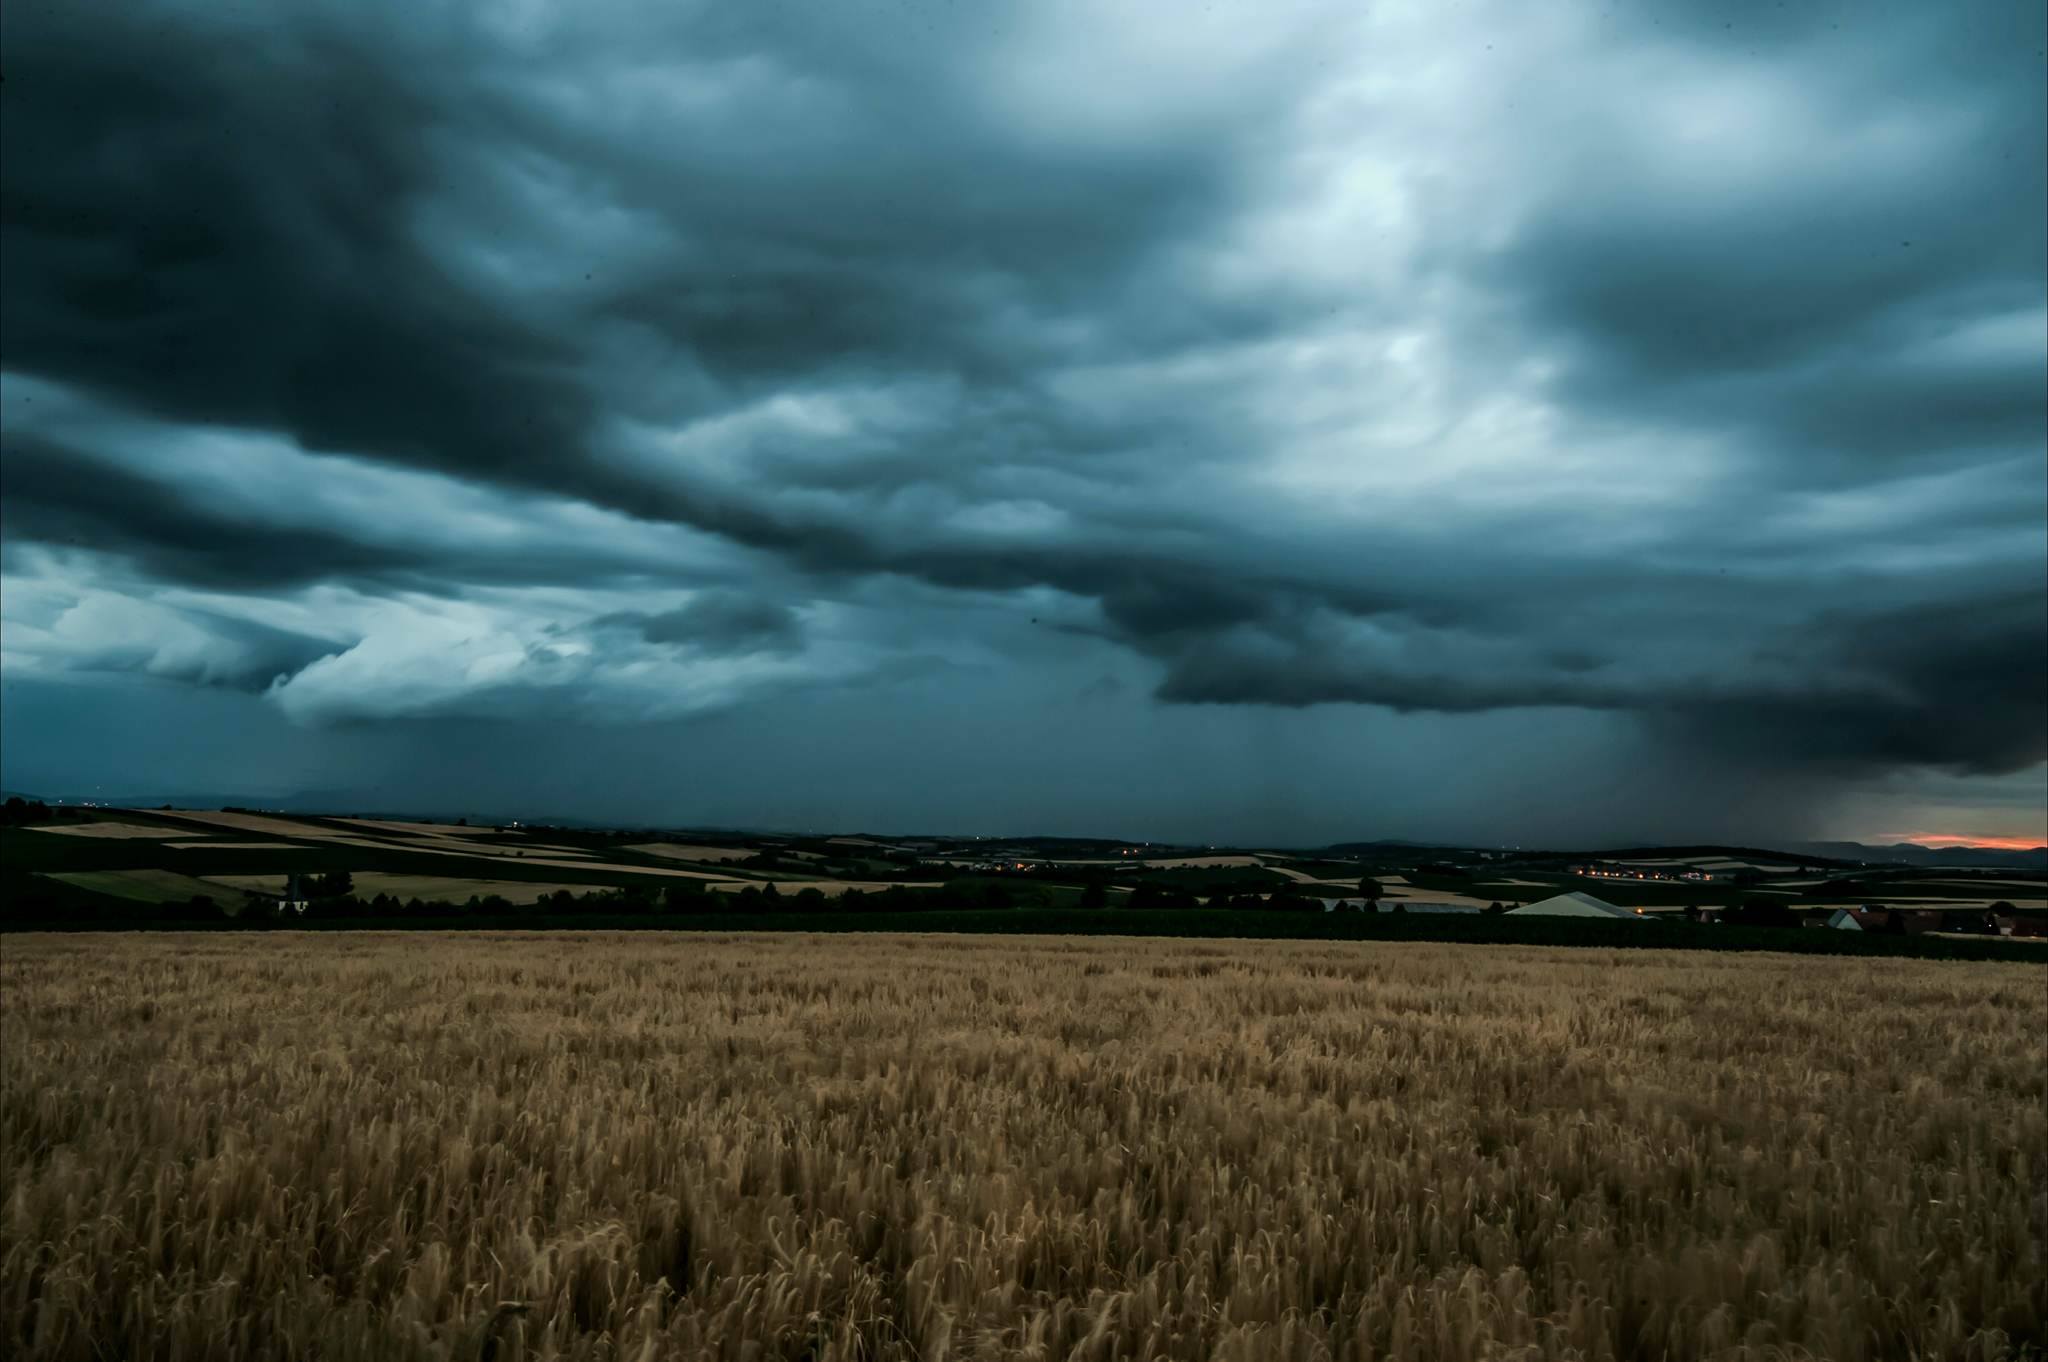 Ambiance orageuse sur les hauteurs de Morschwiller en Alsace en début de soirée - 28/06/2017 21:00 - Mickaël SC